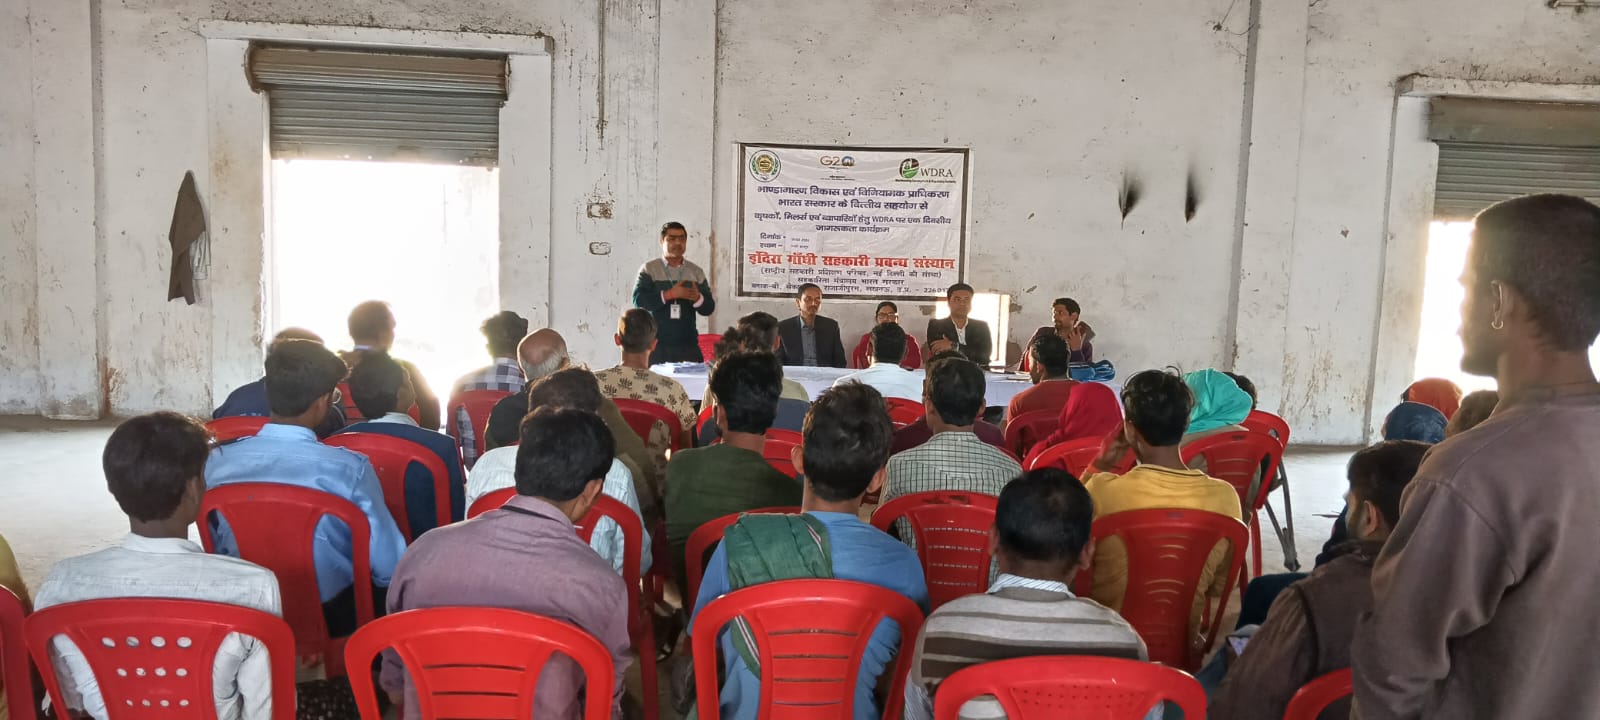 इंदिरा गांधी सहकारी प्रबंध संस्थान लखनऊ ने कृषकों, मिलर्स और व्यापारियों के लिए भांडा गारण विकास एवं विनियम अधिनियम पर एक दिवसीय जागरूकता कार्यक्रम आयोजित किया।